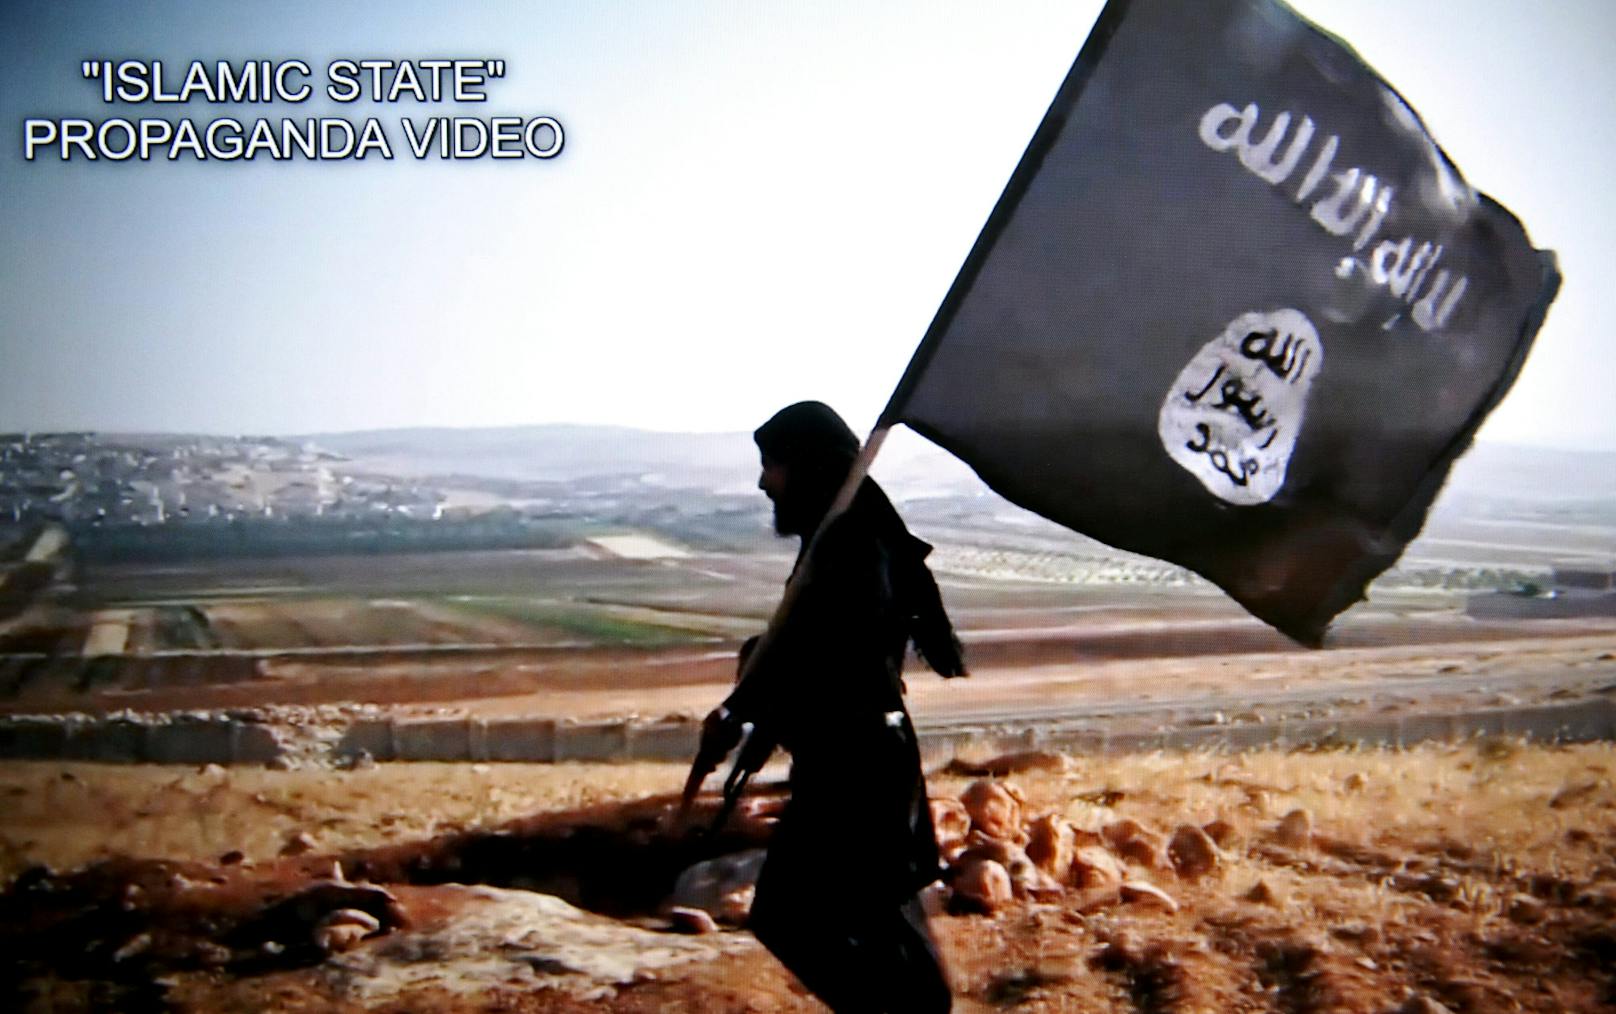 IS-Anhänger (15) verhaftet – er wollte Bomben bauen